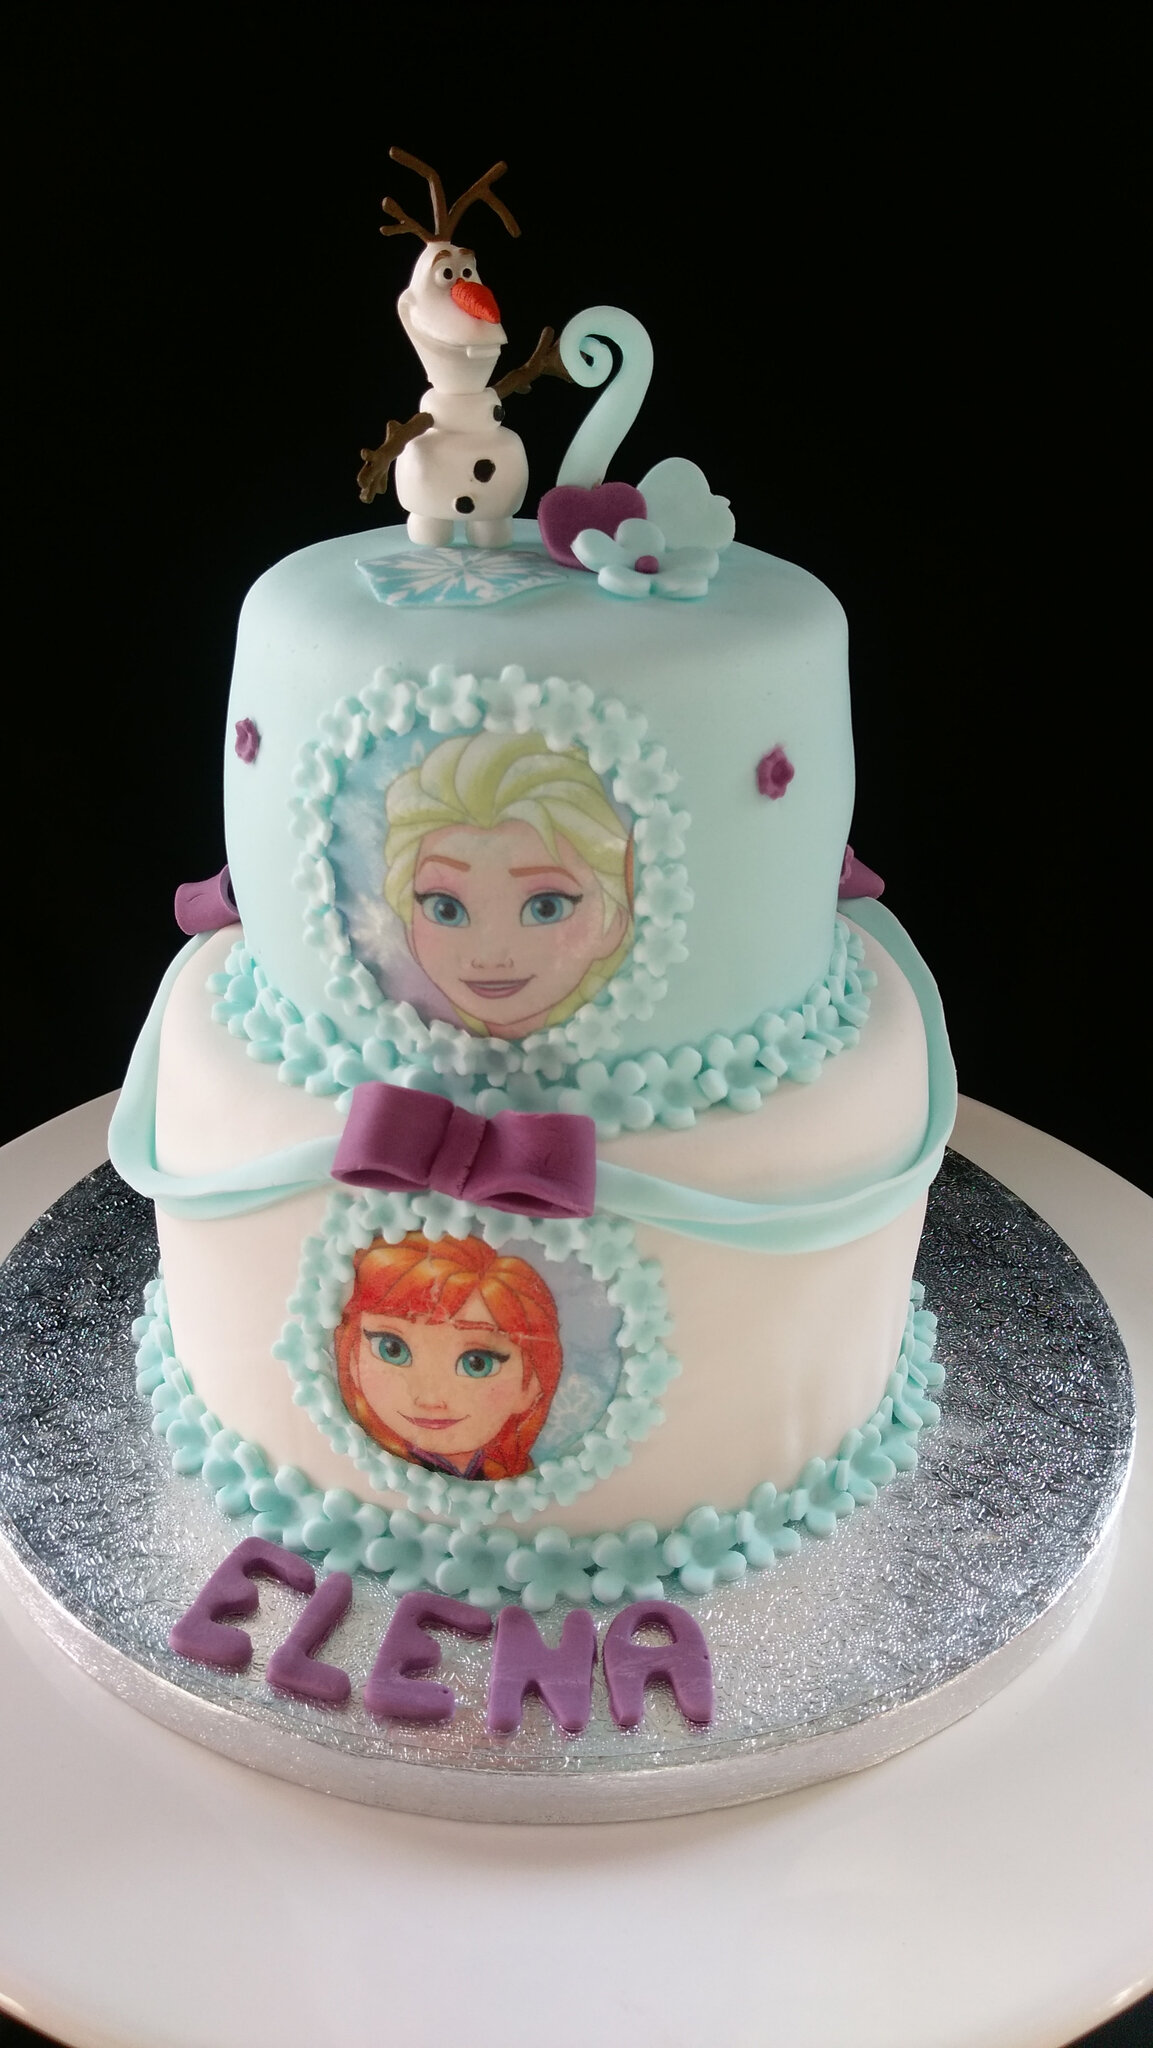 Gâteau Reine des neige n°4 - Les Hobbies d'Aurélie